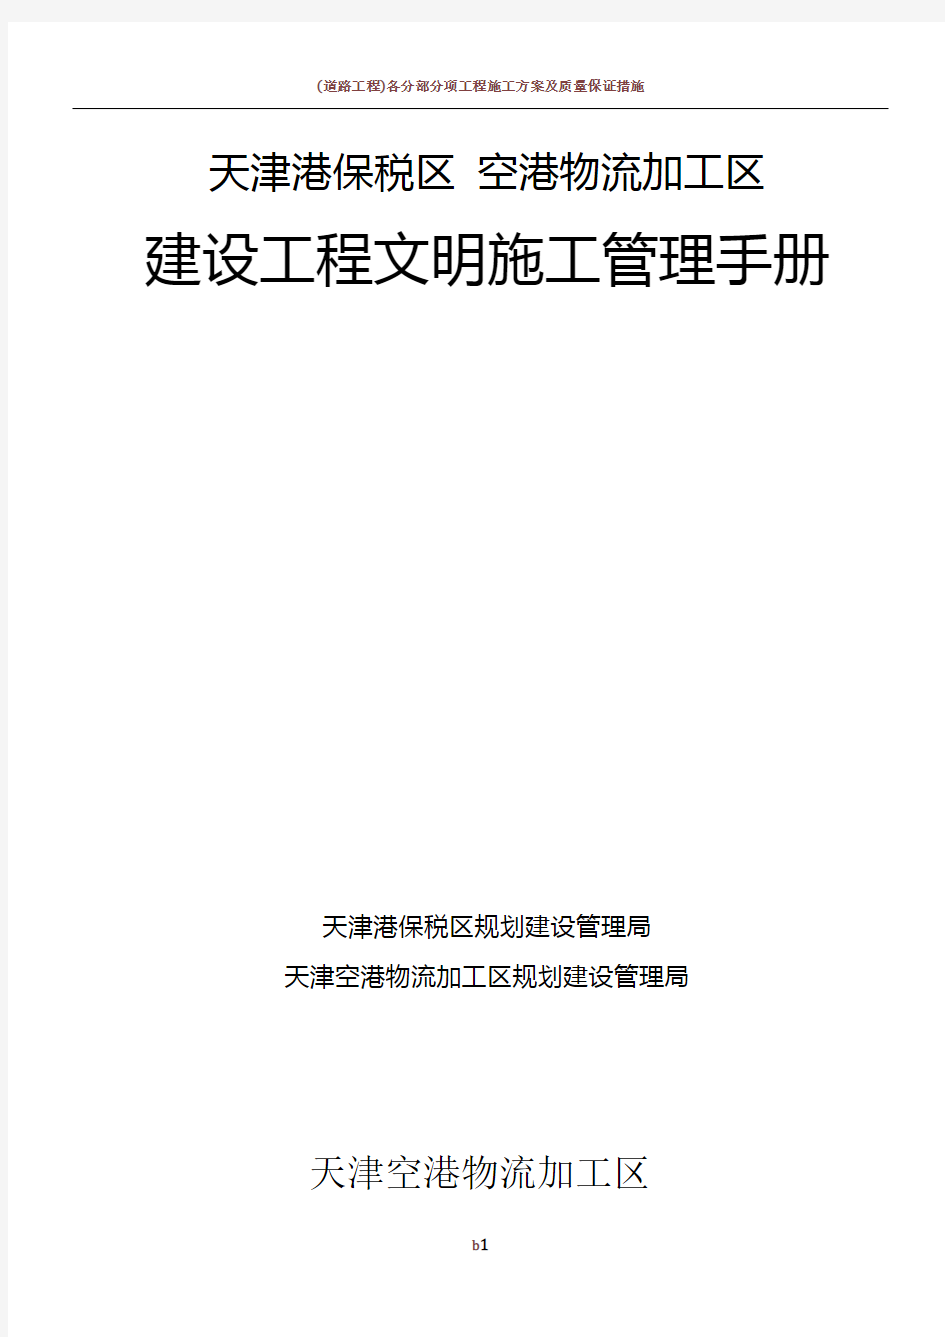 天津空港物流加工区建设工程文明施工管理手册2009